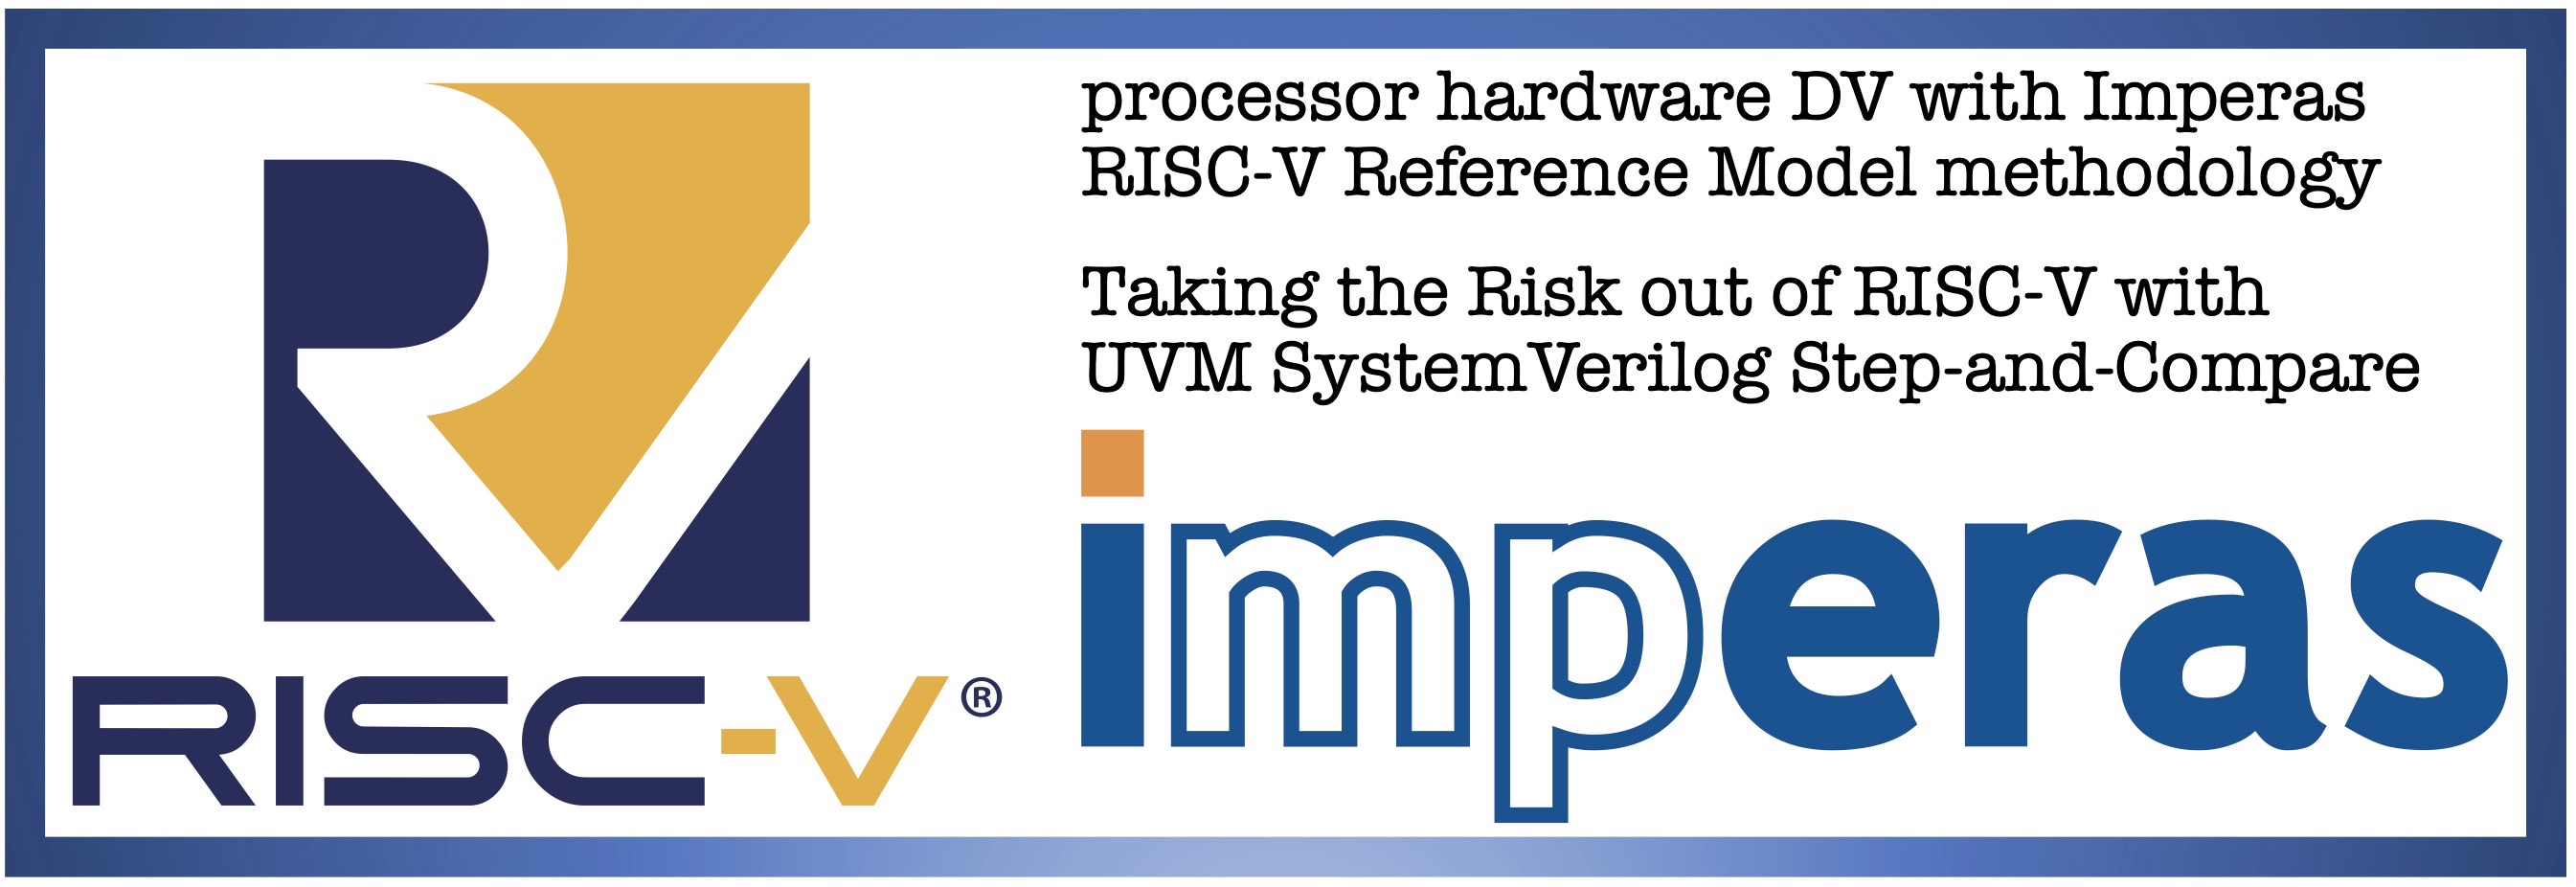 Imperas RISC-V Reference Model